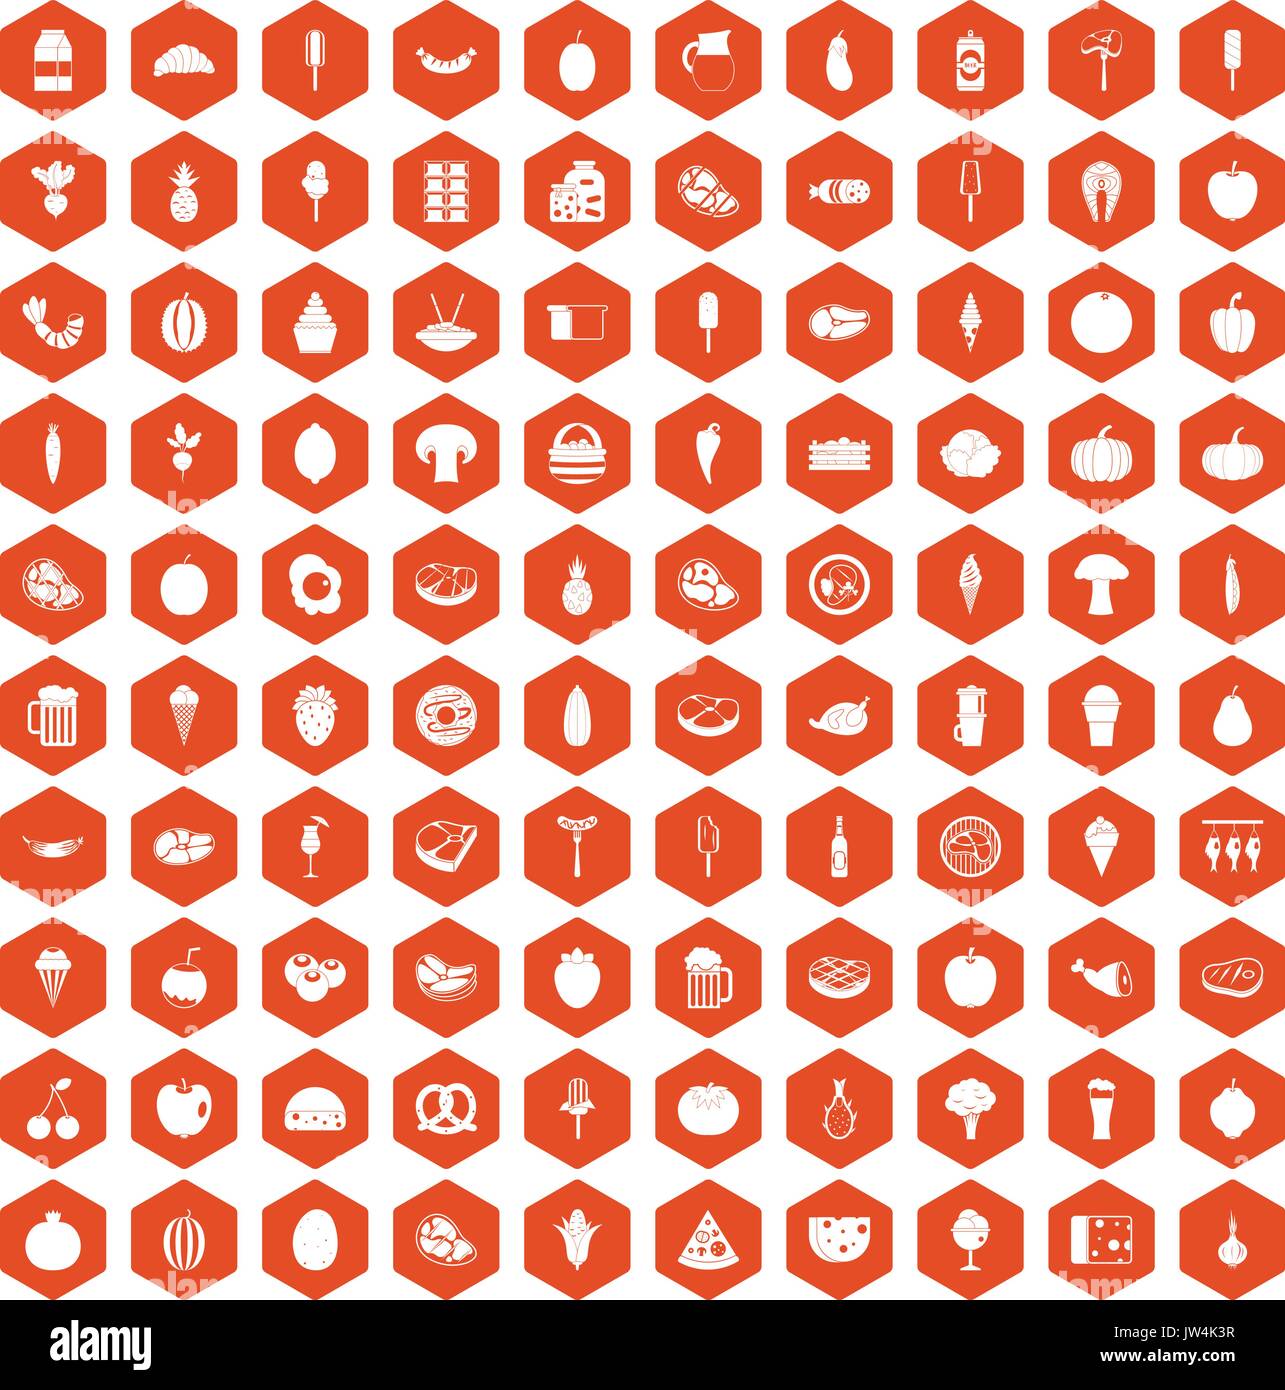 100 food icons hexagon orange Stock Vector